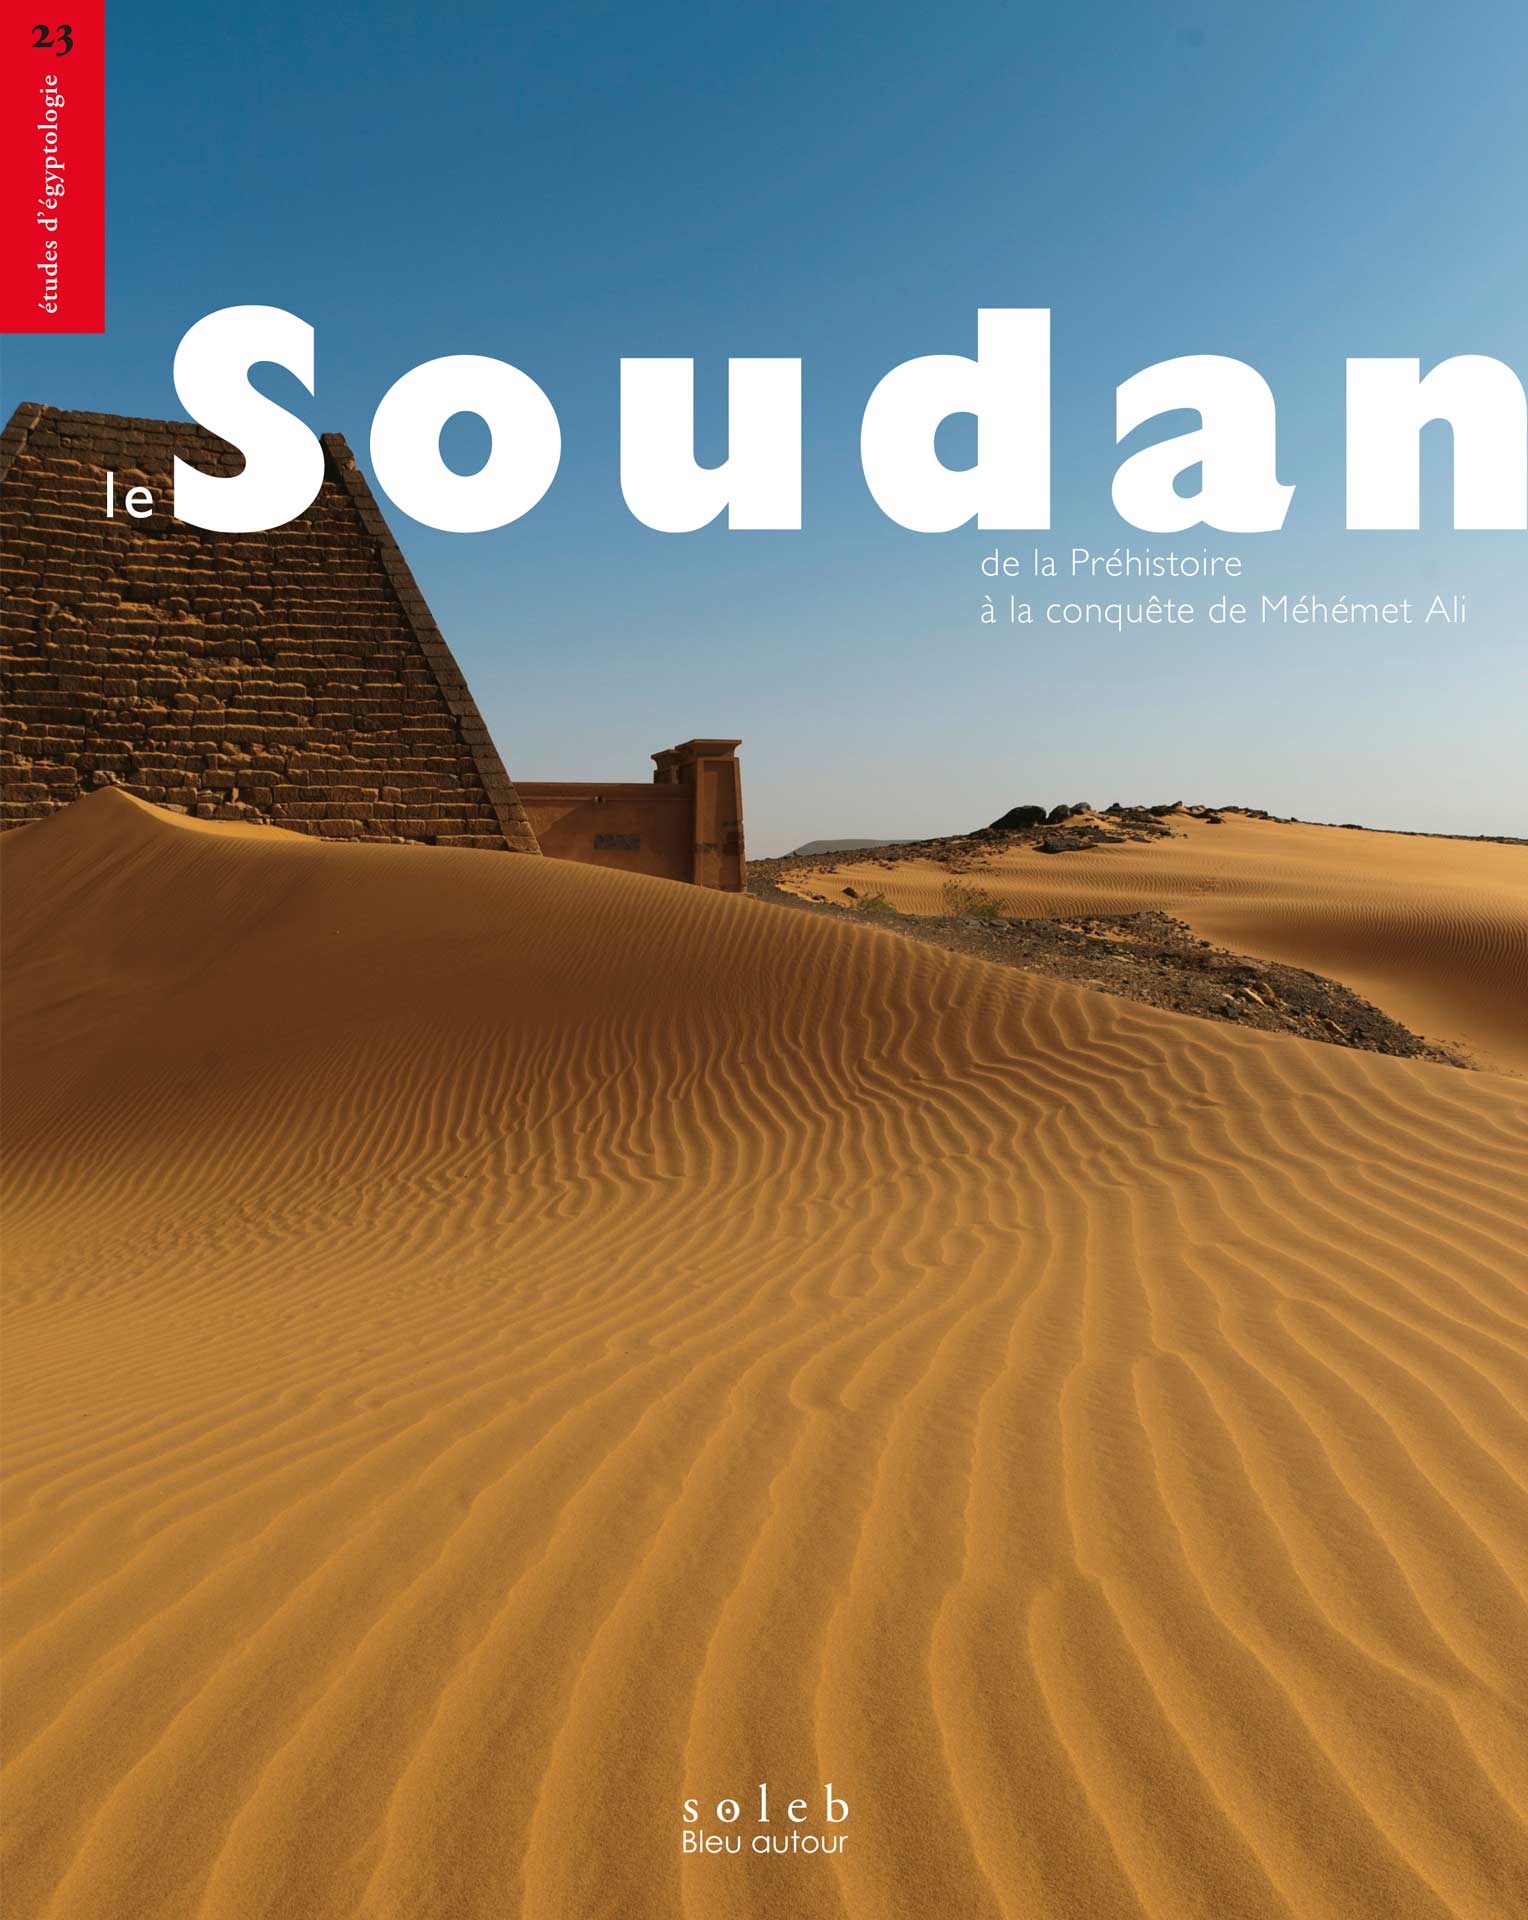 Le Soudan, de la Préhistoire а la conquête de Méhémet Ali, 2022, 608 p.